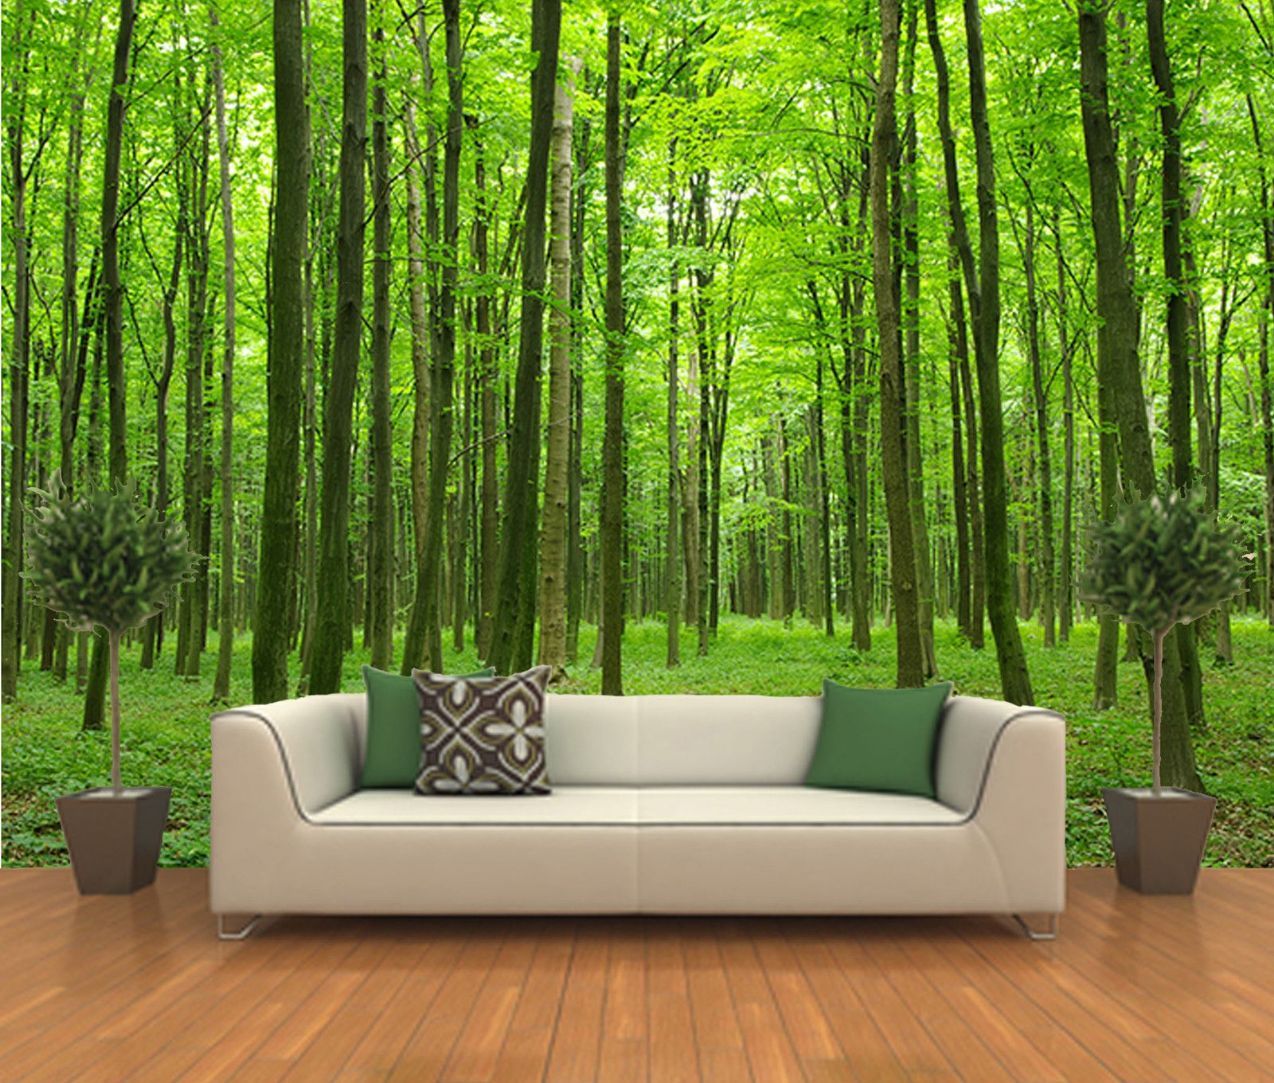 寝室のための森の壁紙,自然の風景,自然,緑,木,壁紙